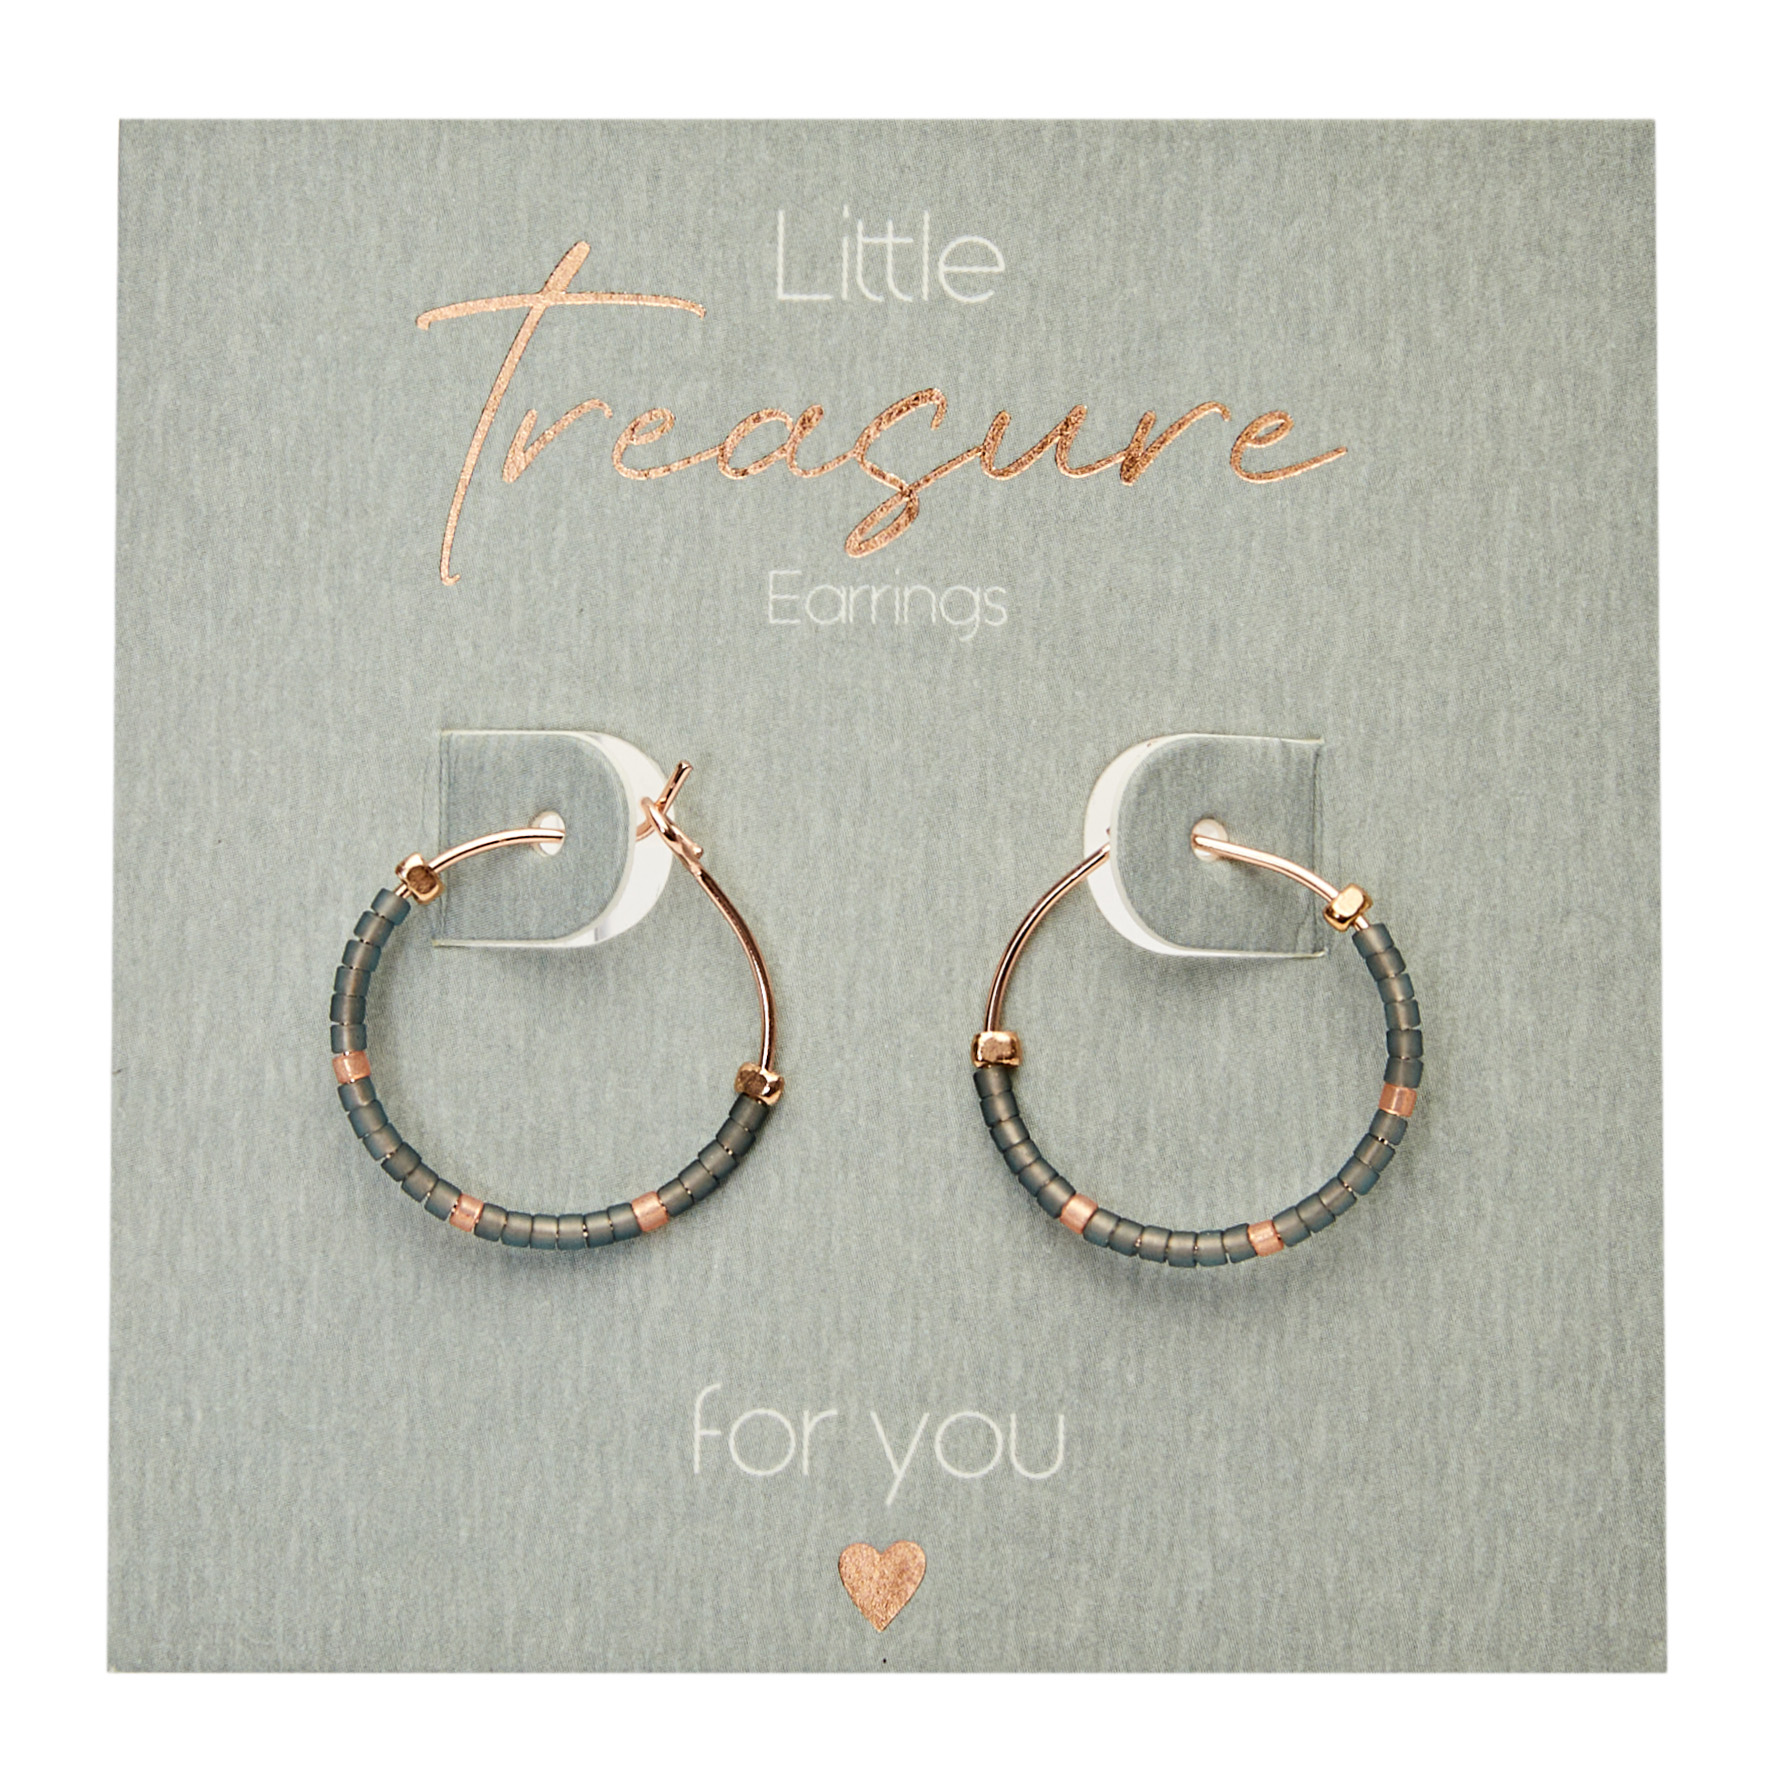 Display earrings "Little Treasure"